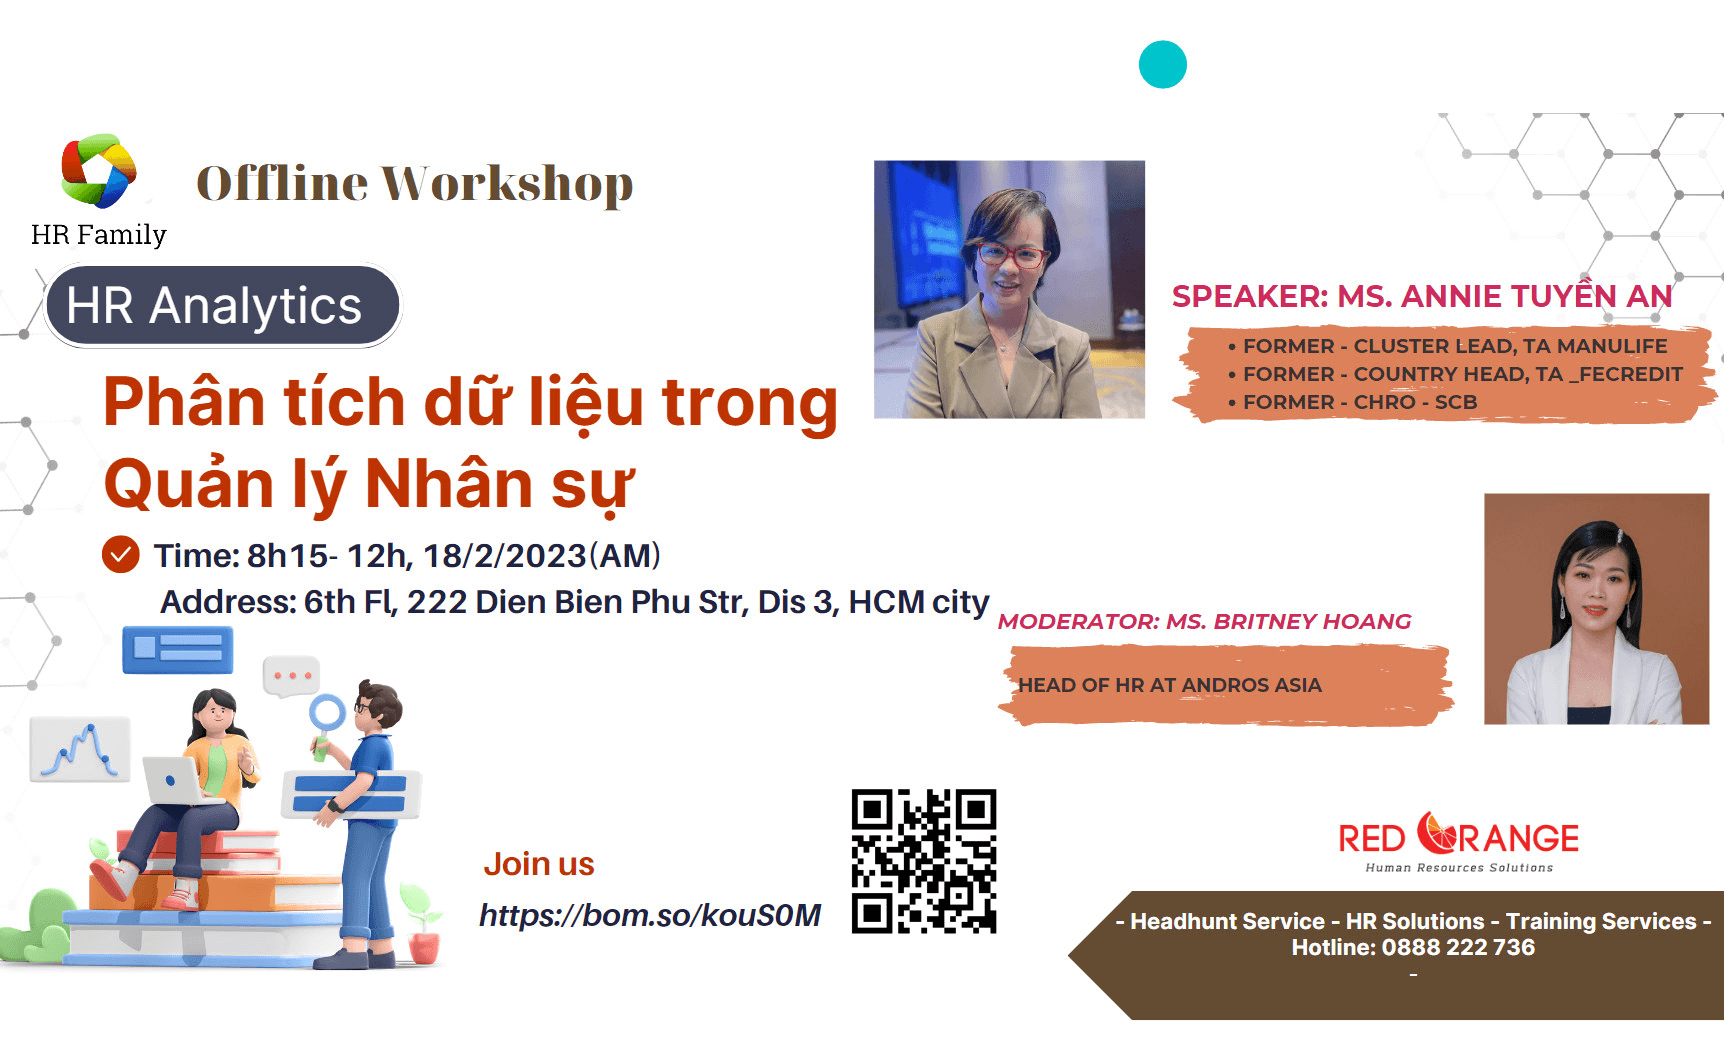 Offline Workshop 18/02: HR Analytics: Phân tích dữ liệu trong Quản lý Nhân sự